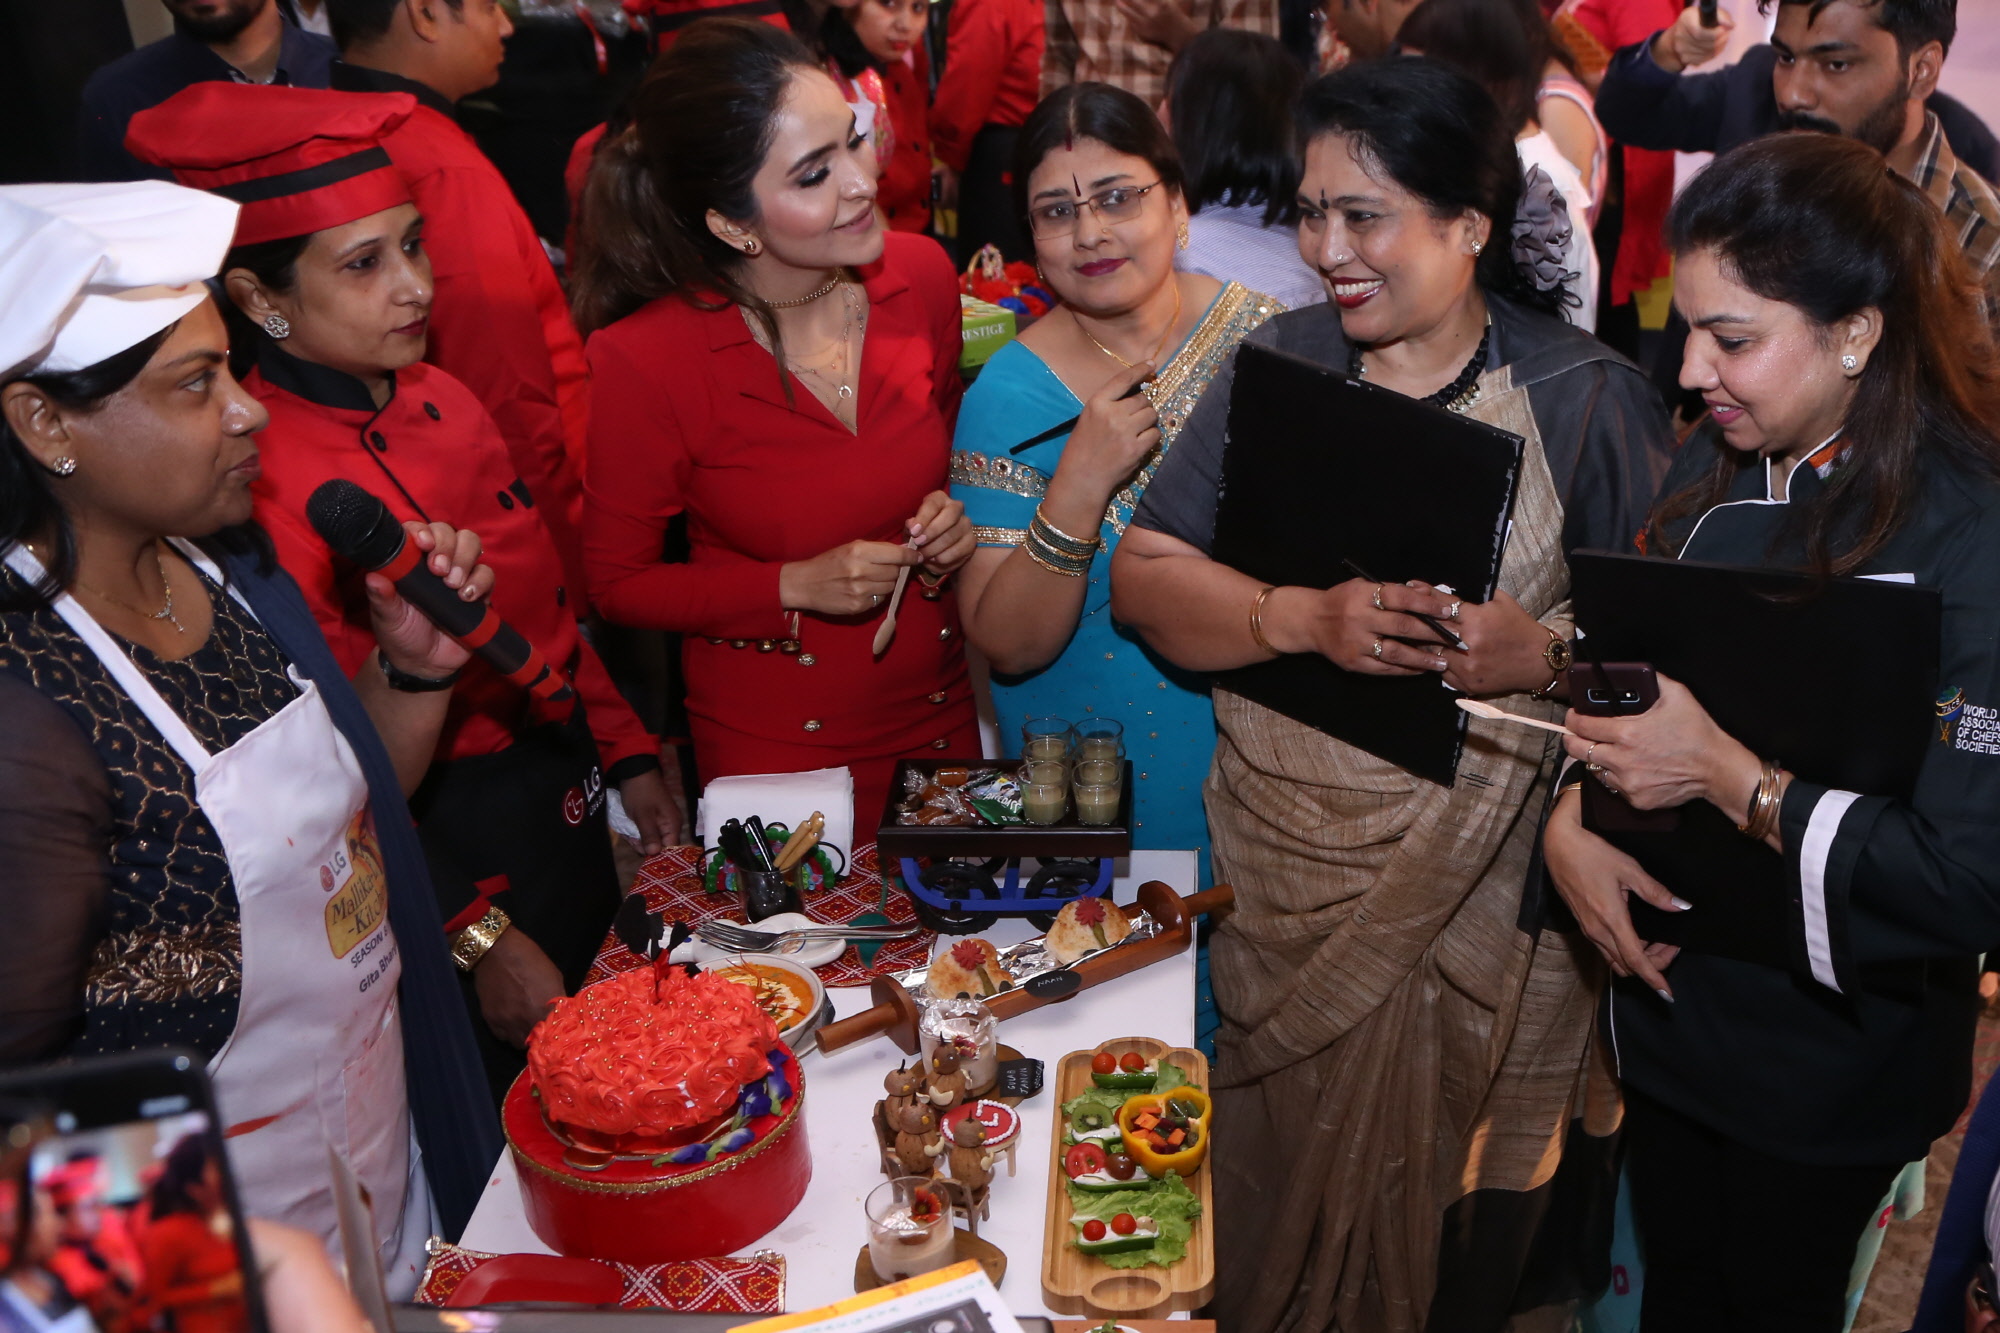 LG전자가 28일 인도 뉴델리 하야트호텔에서 건강한 요리문화를 확산하기 위해 'LG 요리 경연대회'를 개최했다. LG 광파오븐을 활용해 만든 요리를  심사위원들이 평가하고 있다. 